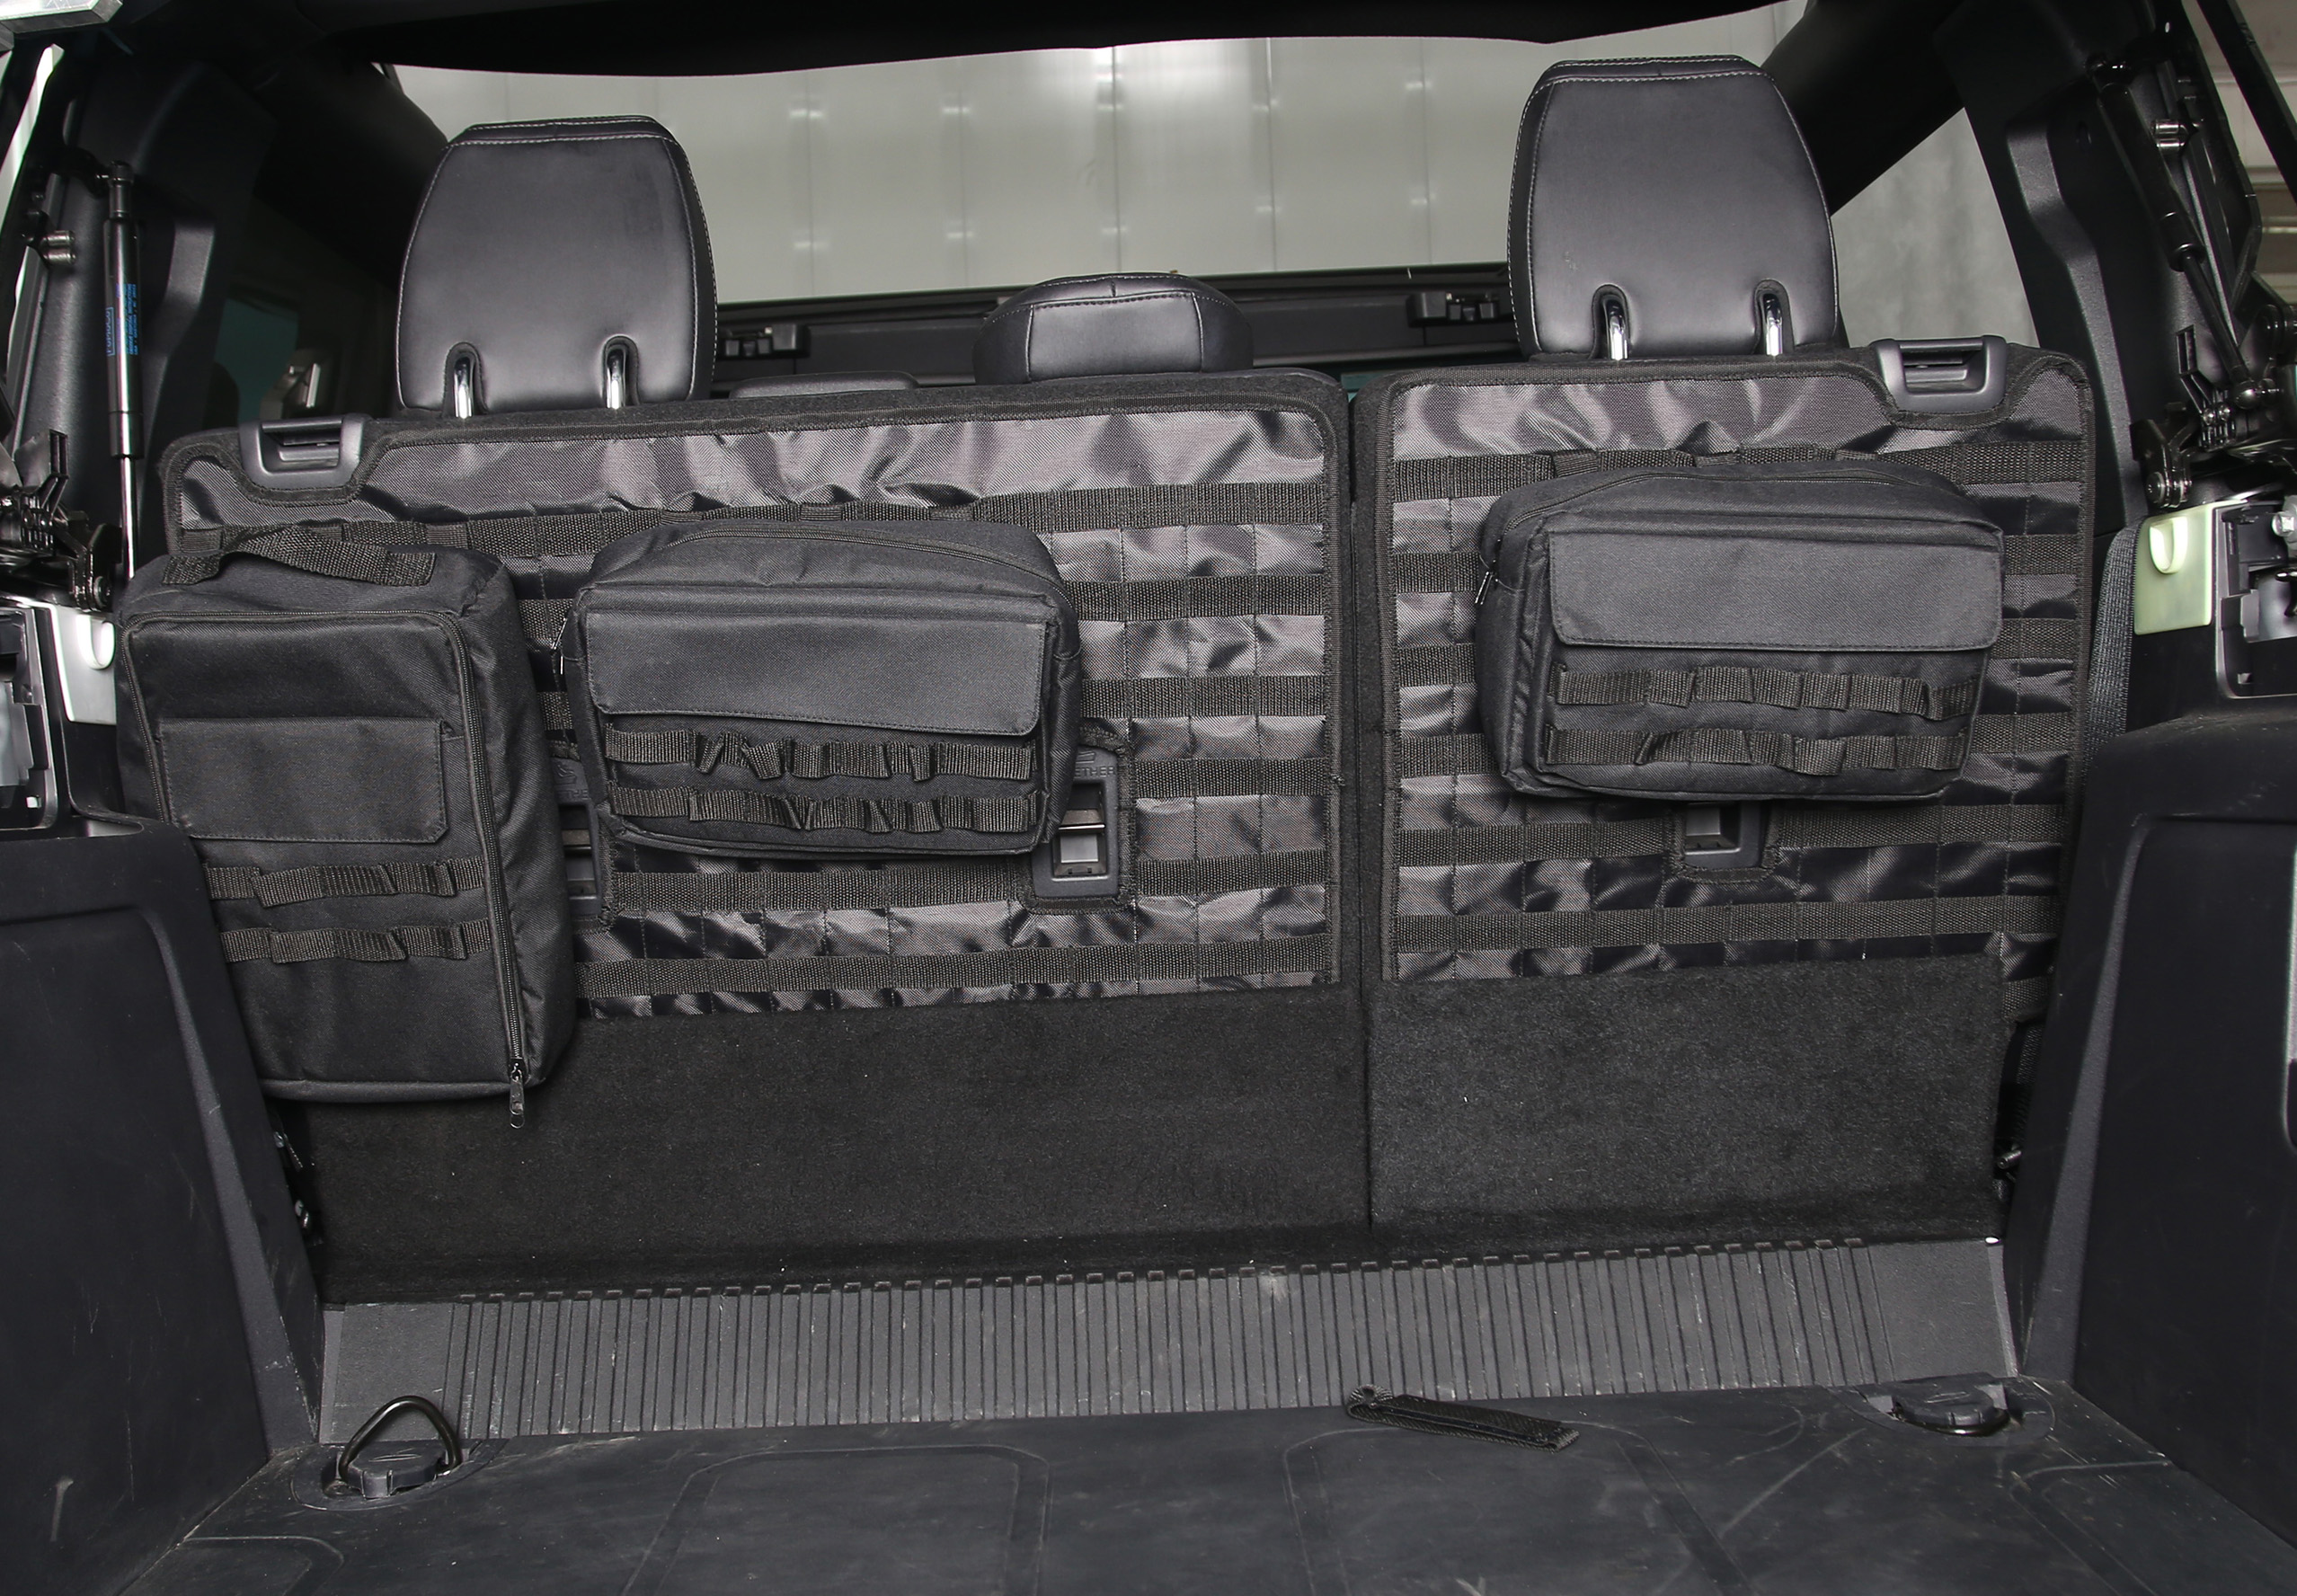 Ford Bronco Seat Back Tool Hanger - 4 Door